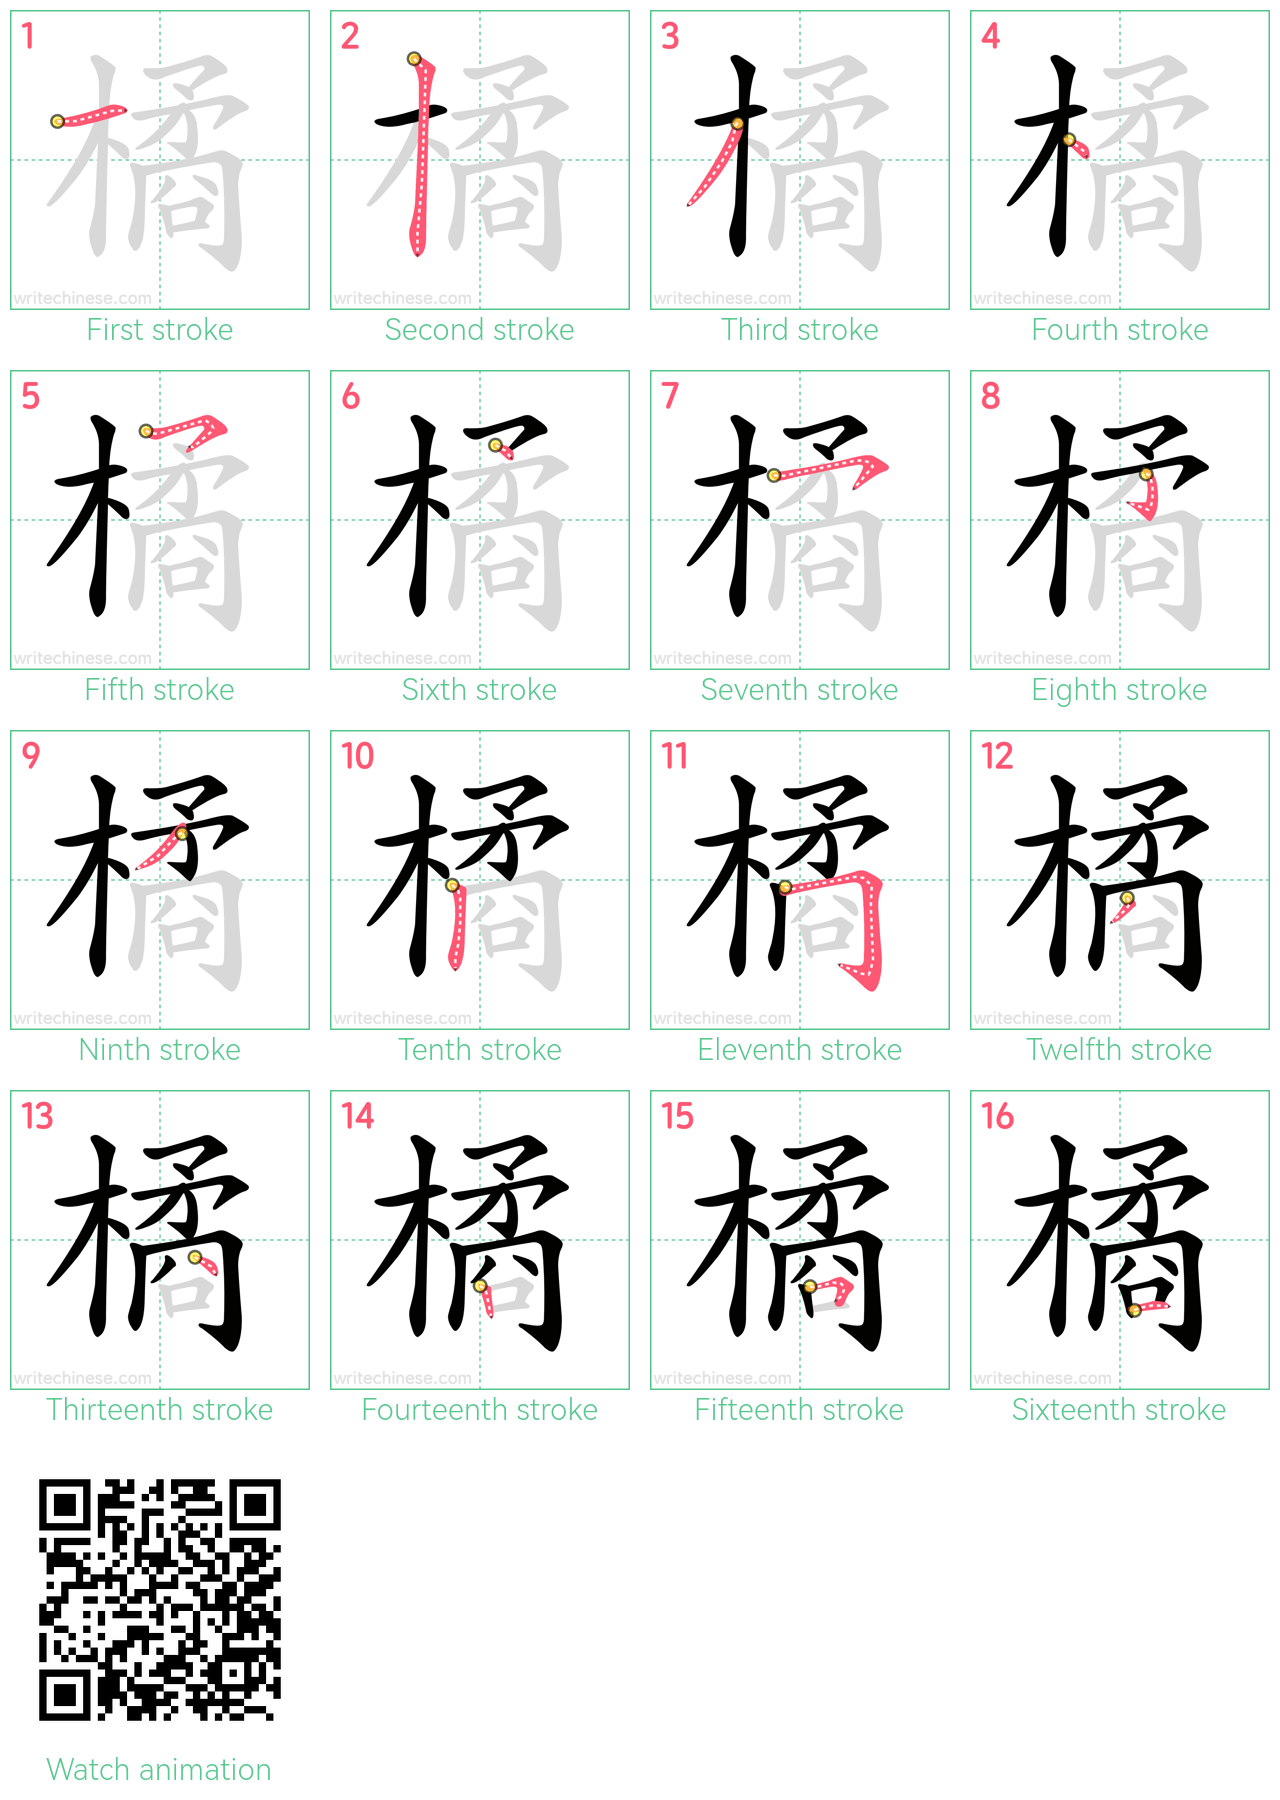 橘 step-by-step stroke order diagrams